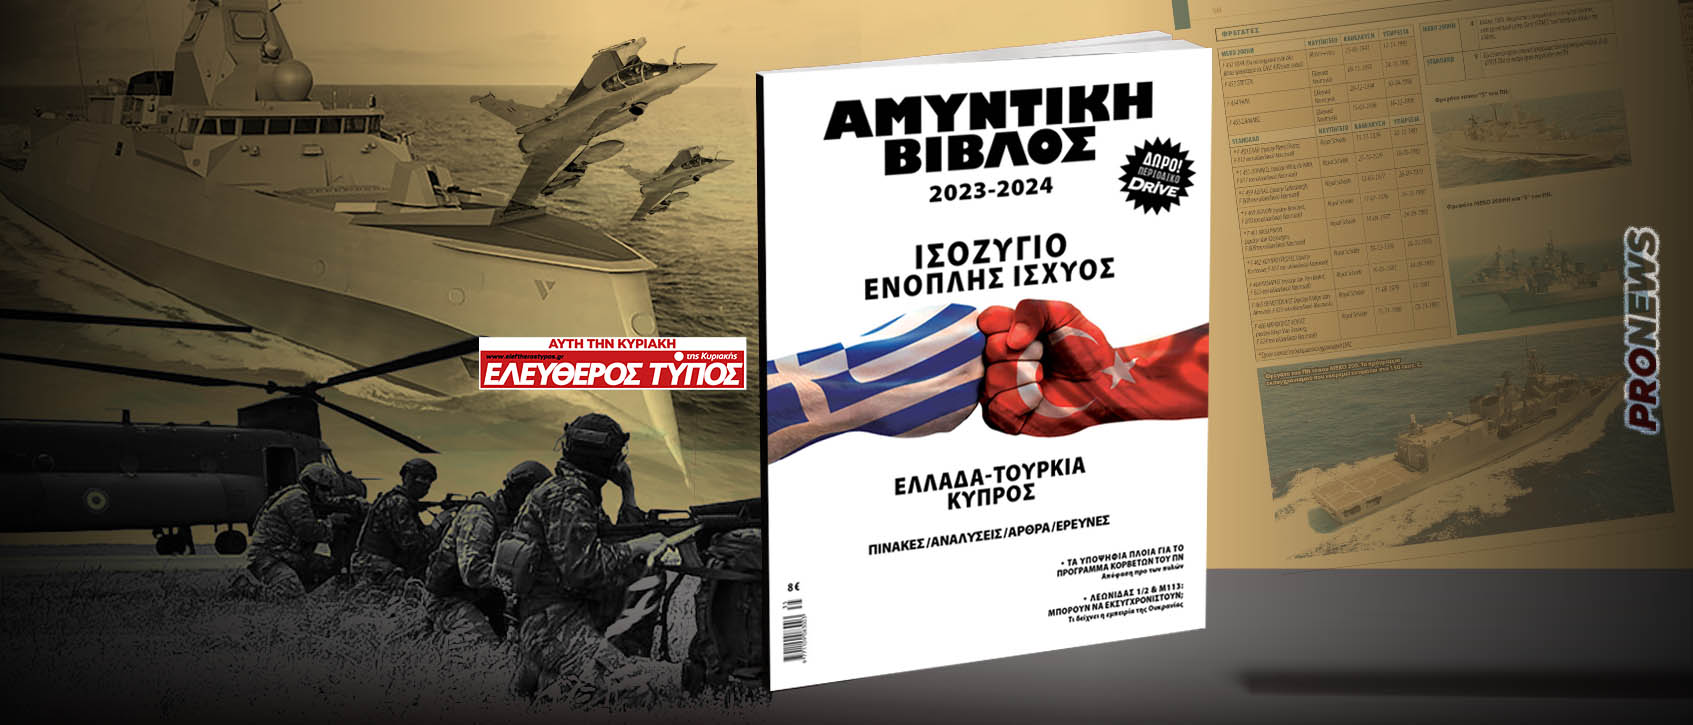 ΑΜΥΝΤΙΚΗ ΒΙΒΛΟΣ 2023-2024: Κυκλοφορεί σε όλη την Ελλάδα η ετήσια υπερ-έκδοση με τον Ελεύθερο Τύπο της Κυριακής!